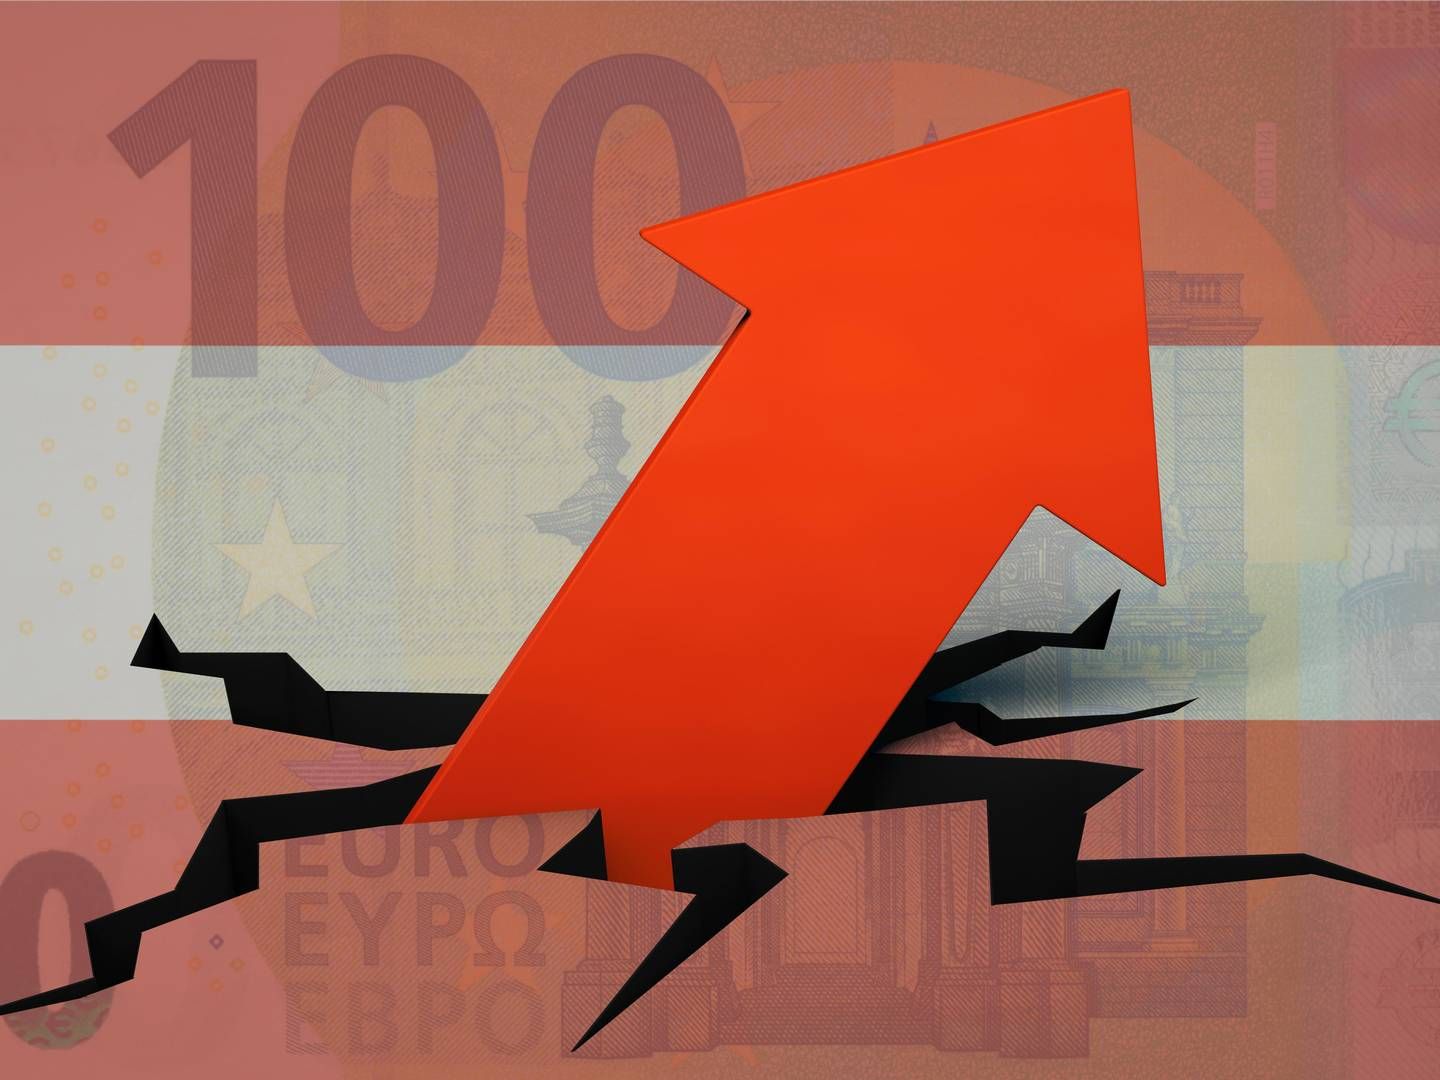 Die Inflation ist im Euroraum immer noch nicht unter Kontrolle. | Photo: picture alliance / Zoonar | DesignIt